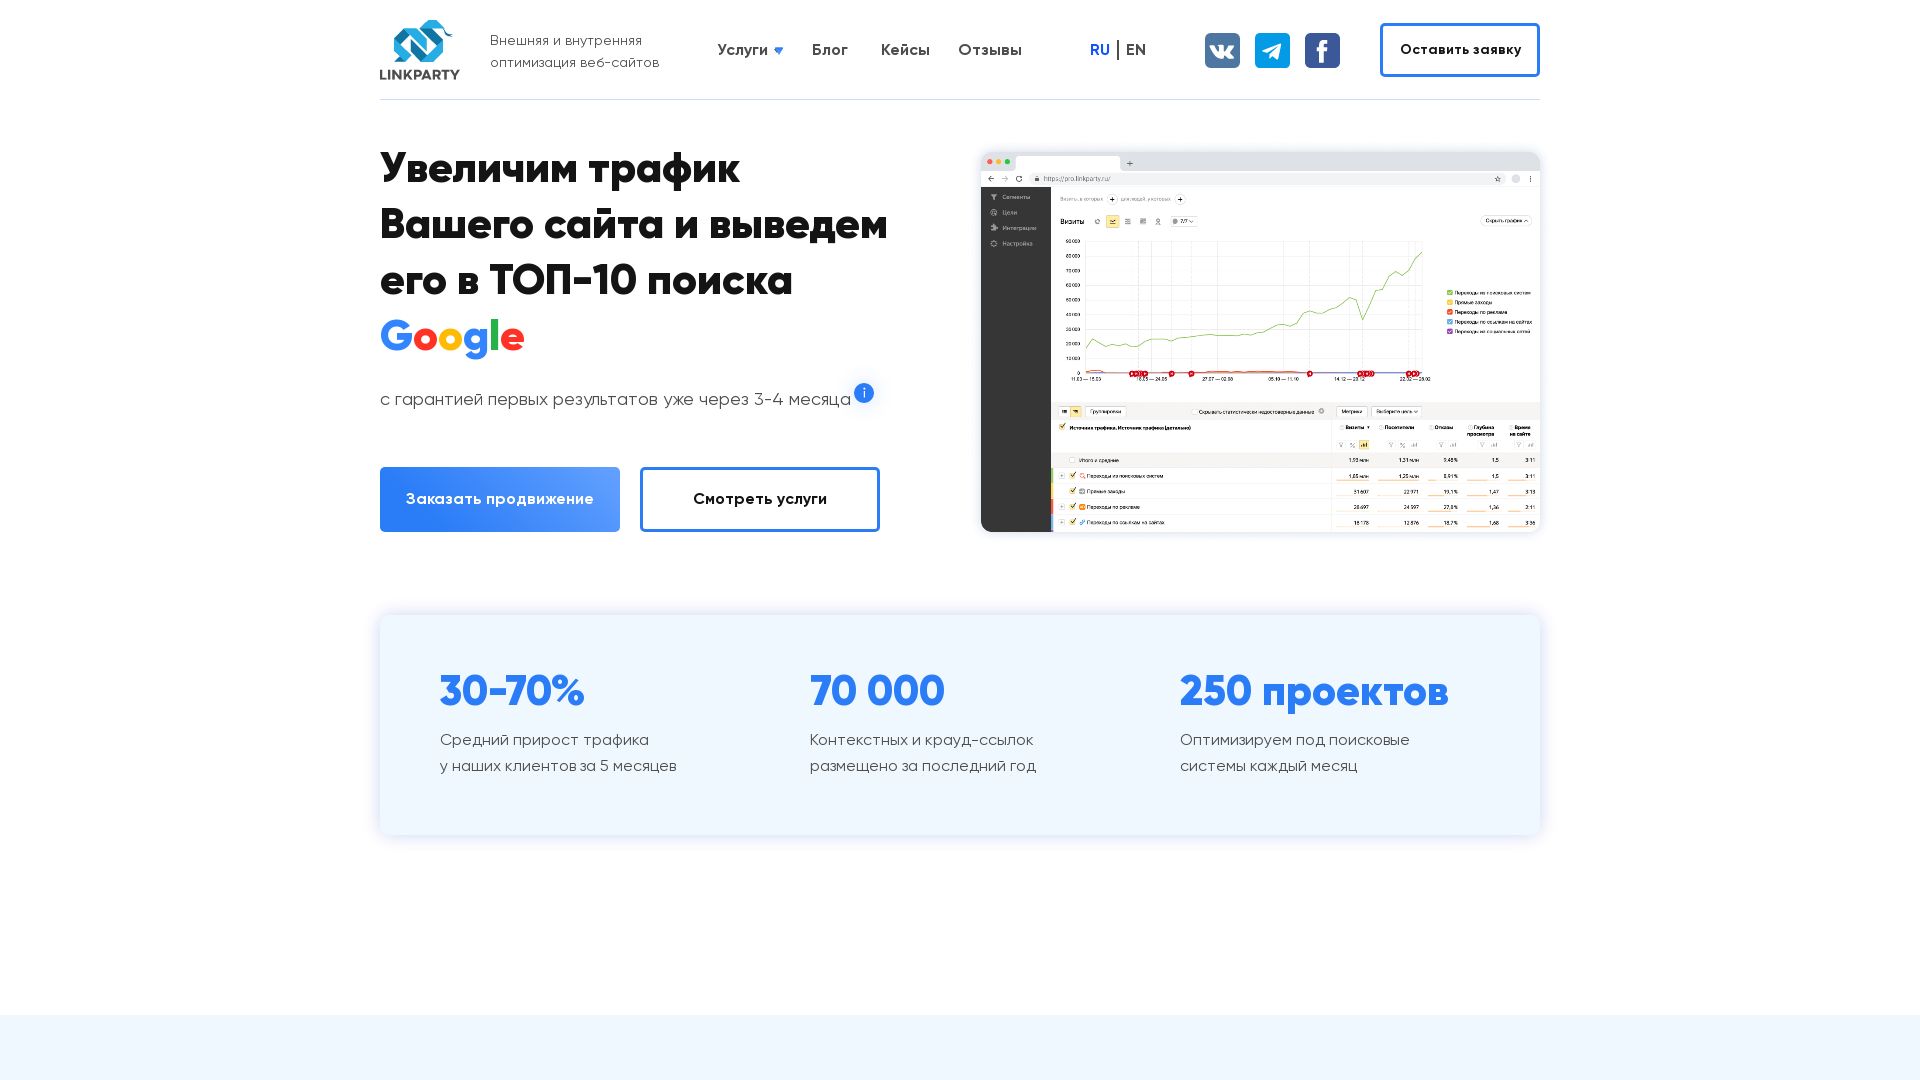 网站状态 linkparty.ru 是  在线的